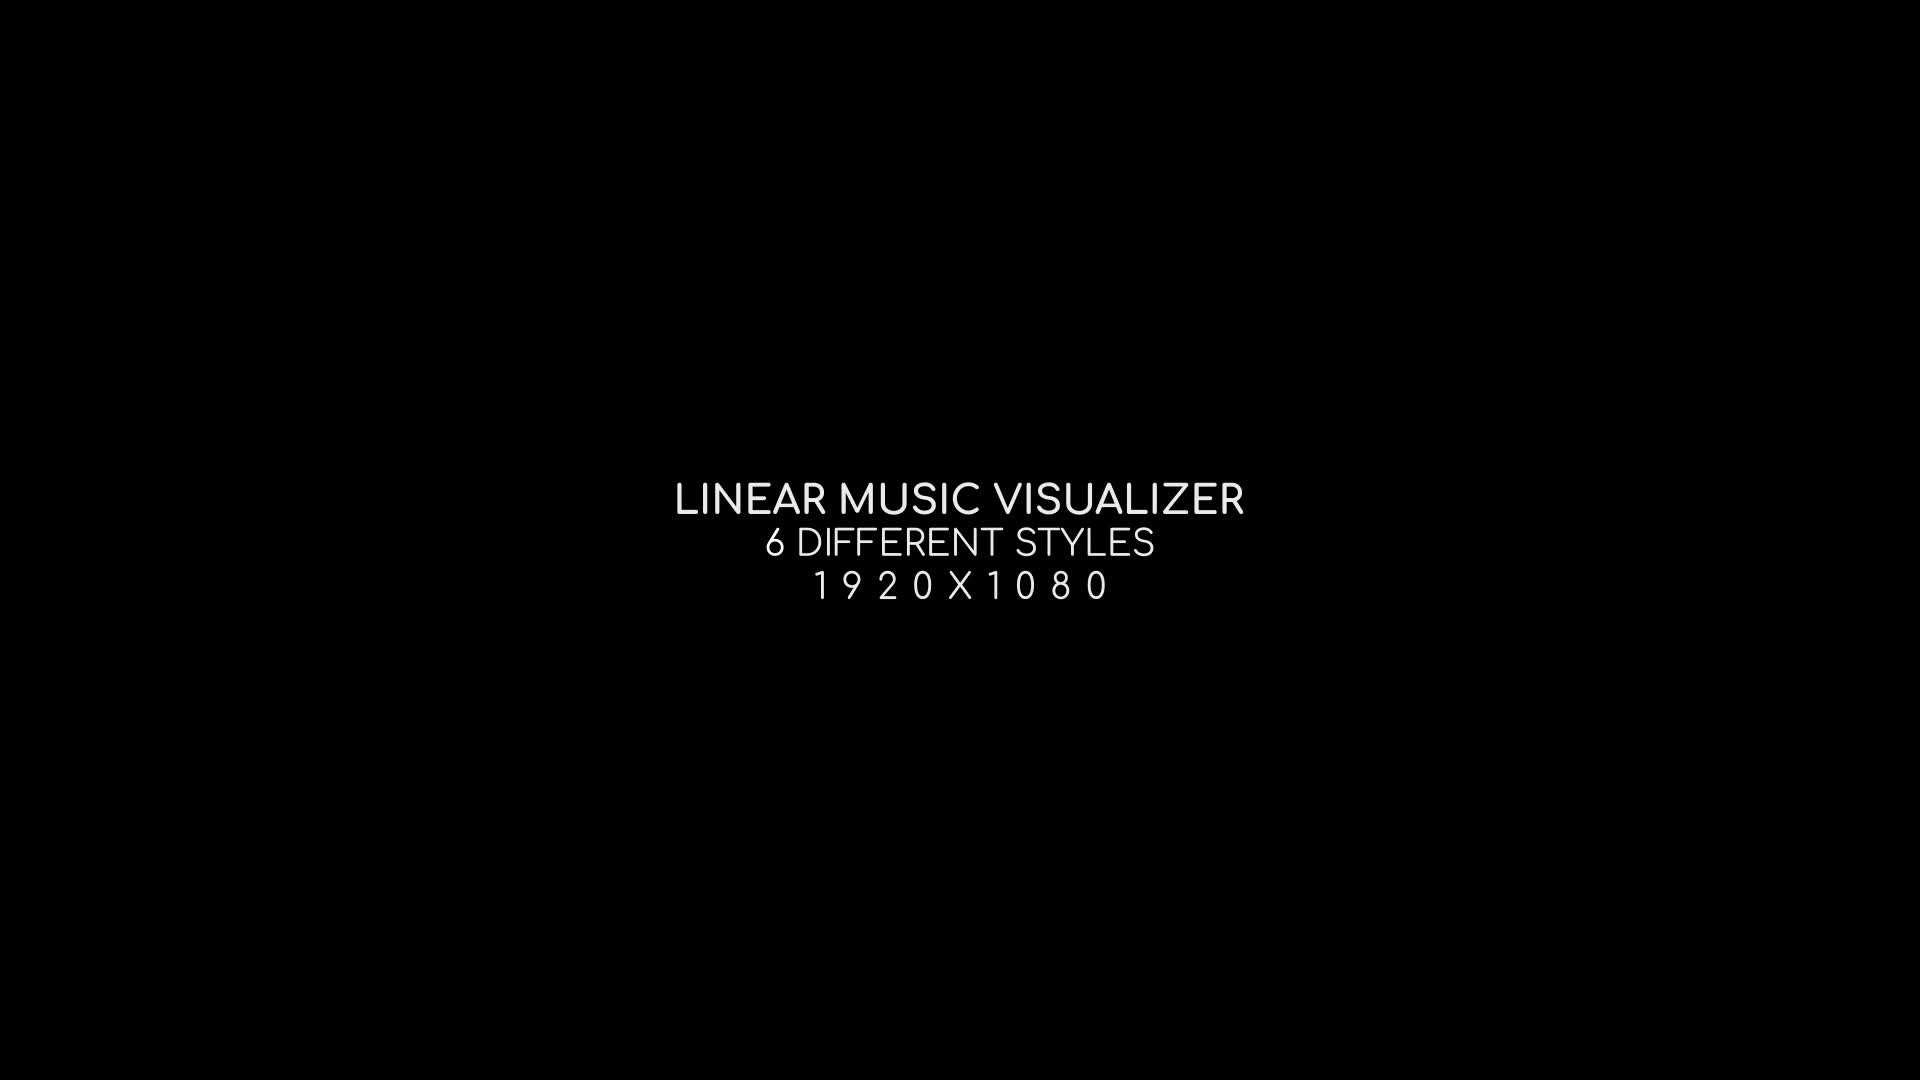 Chìa khóa để tạo ra một video đắm đuối và gợi cảm nằm trong âm nhạc của bạn. Với Linear Music Visualizer, bạn có thể biến các giai điệu nhạc trở thành những hình ảnh tuyệt đẹp và đầy sáng tạo.